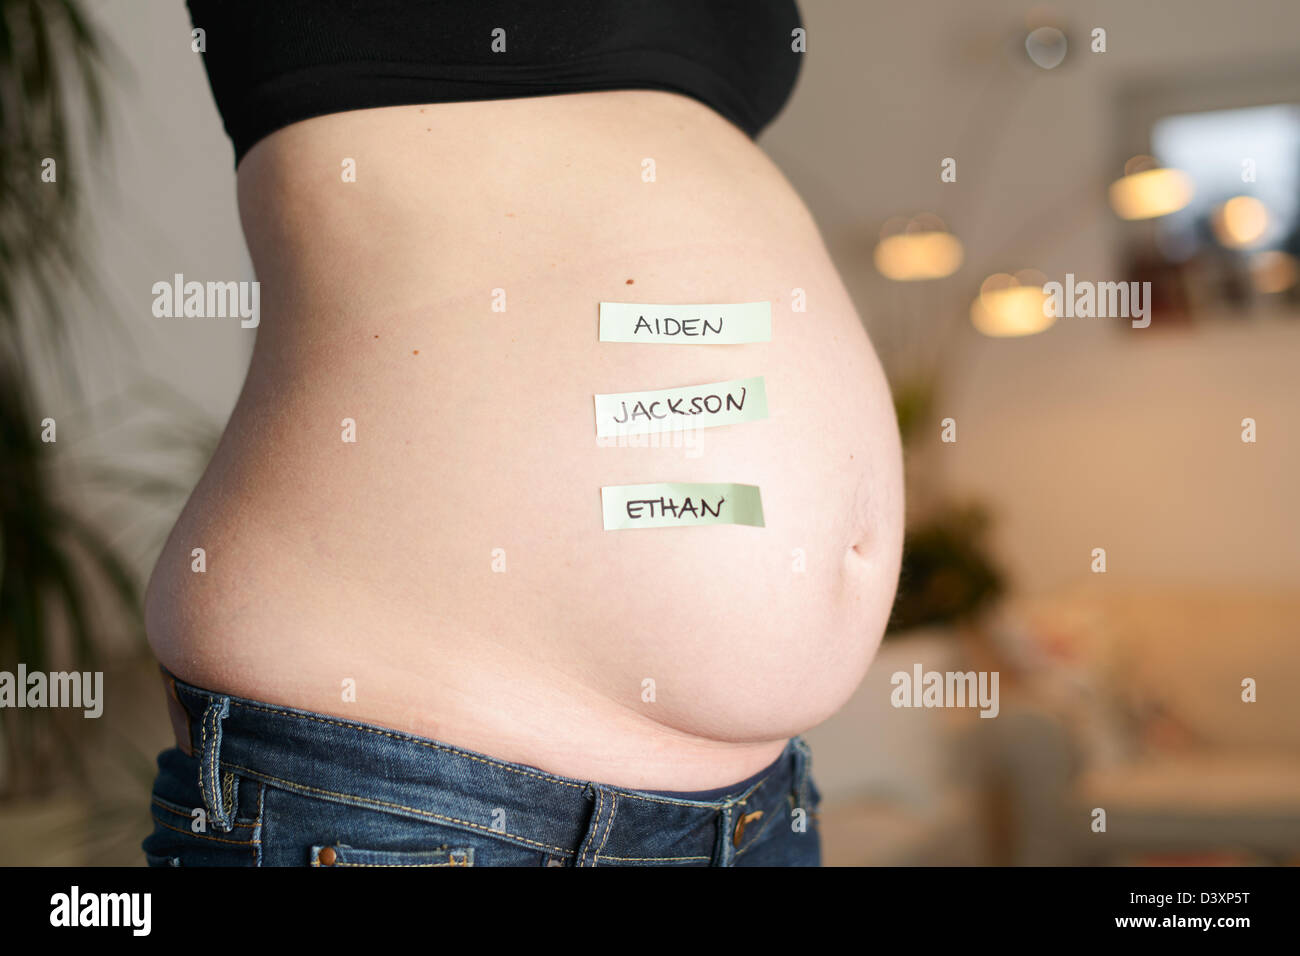 Los tres más populares English Boys' nombres están en un bebé el vientre de una mujer embarazada. Foto de stock